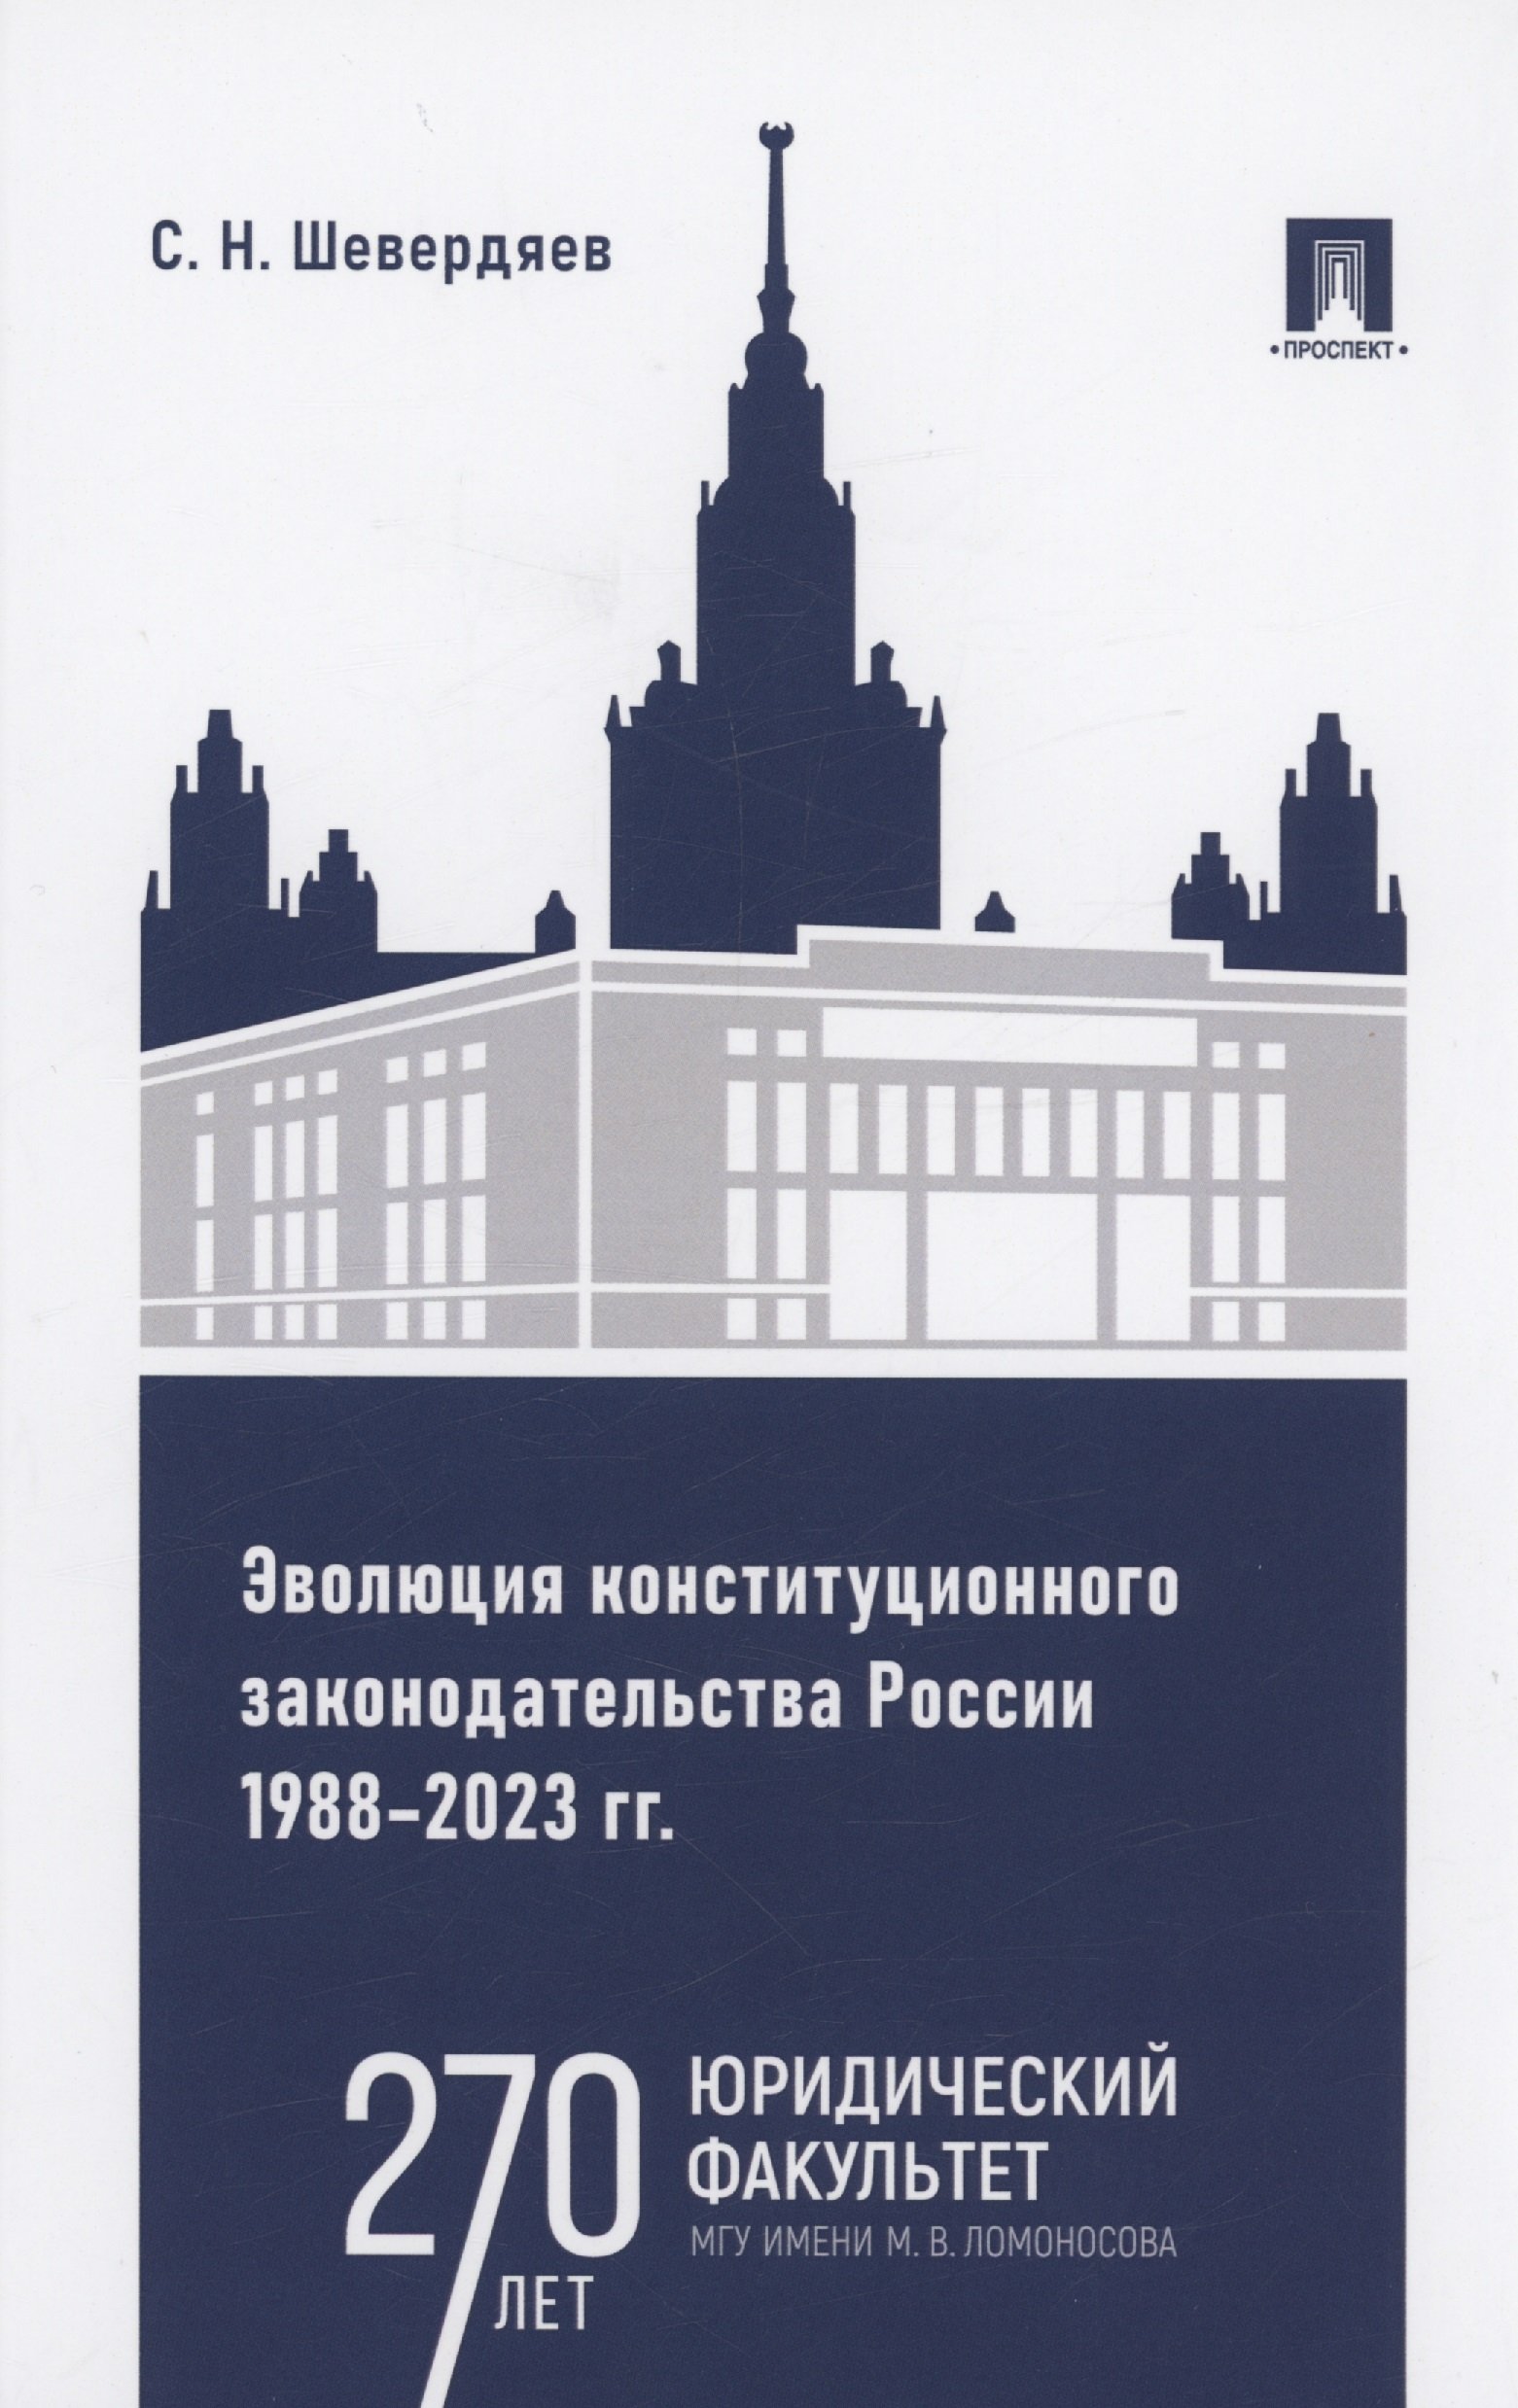     1988 2023 